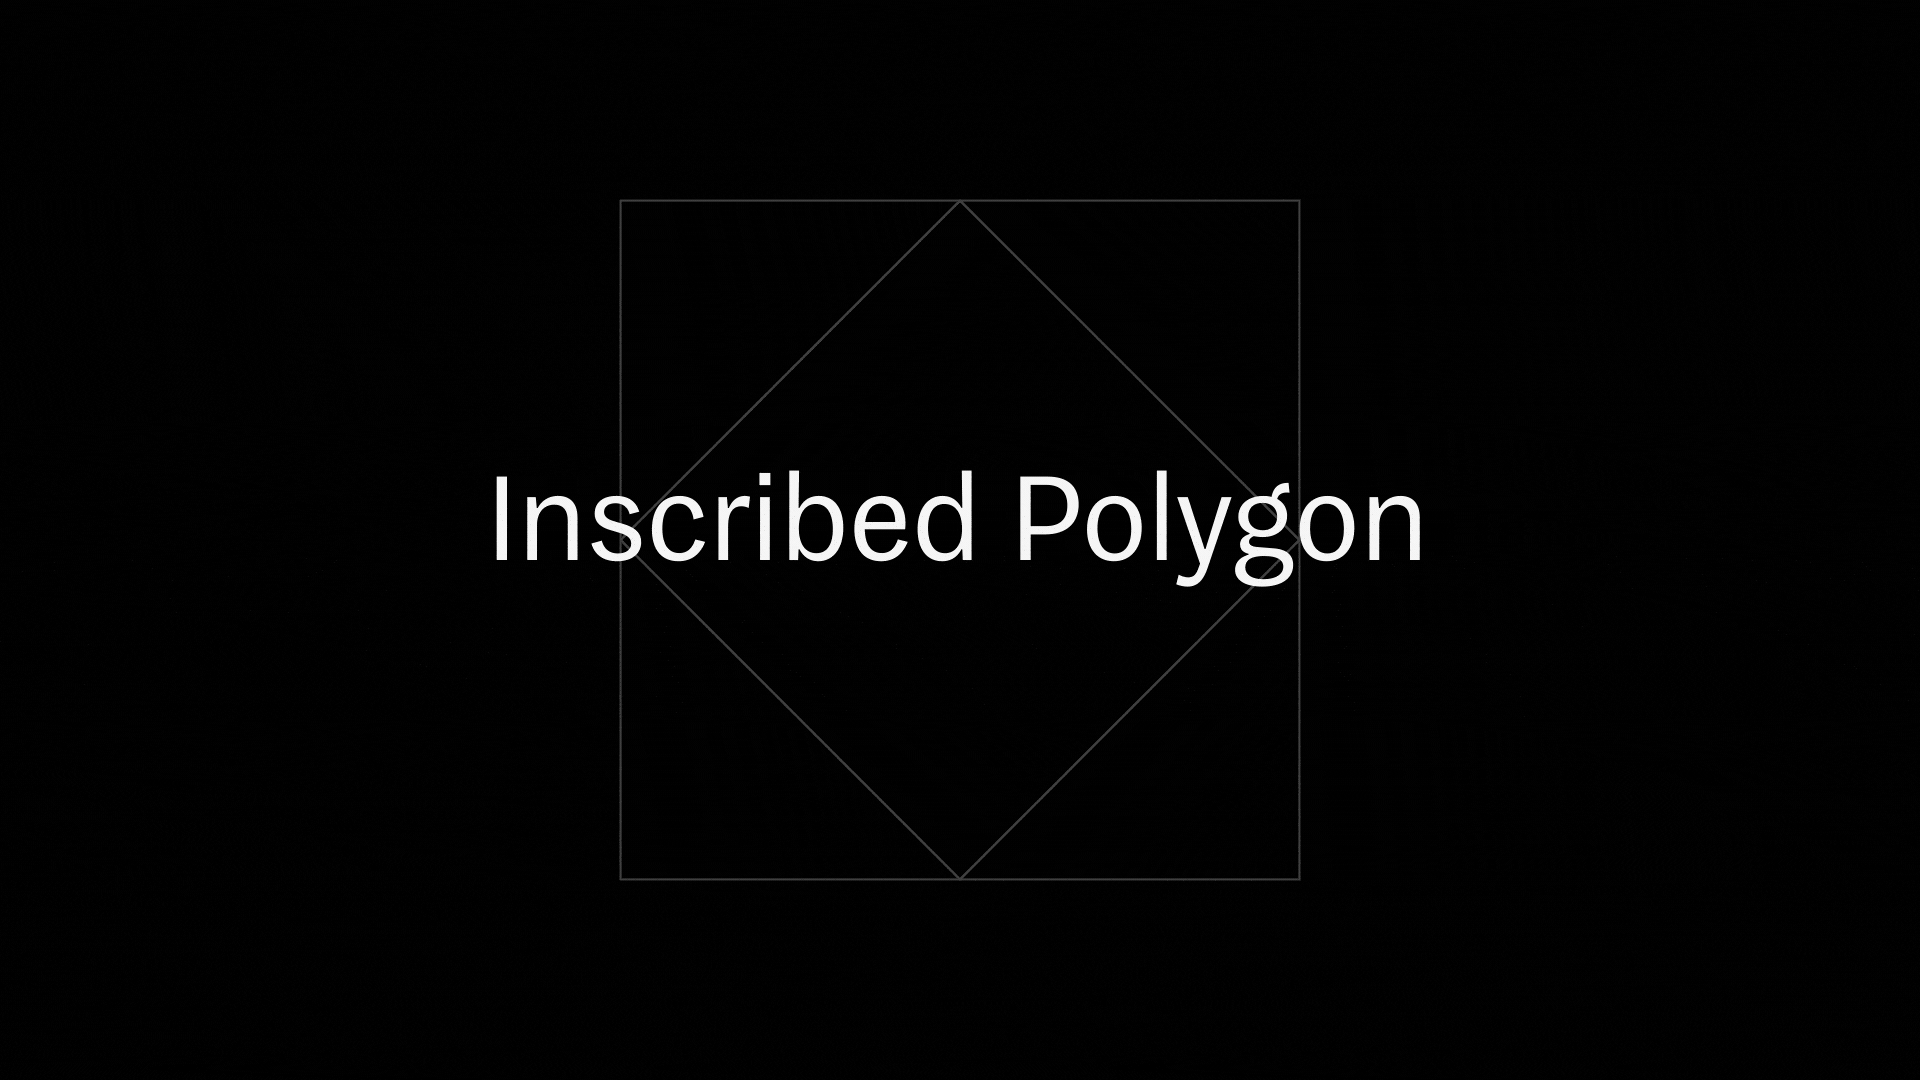 Inscribed Polygon